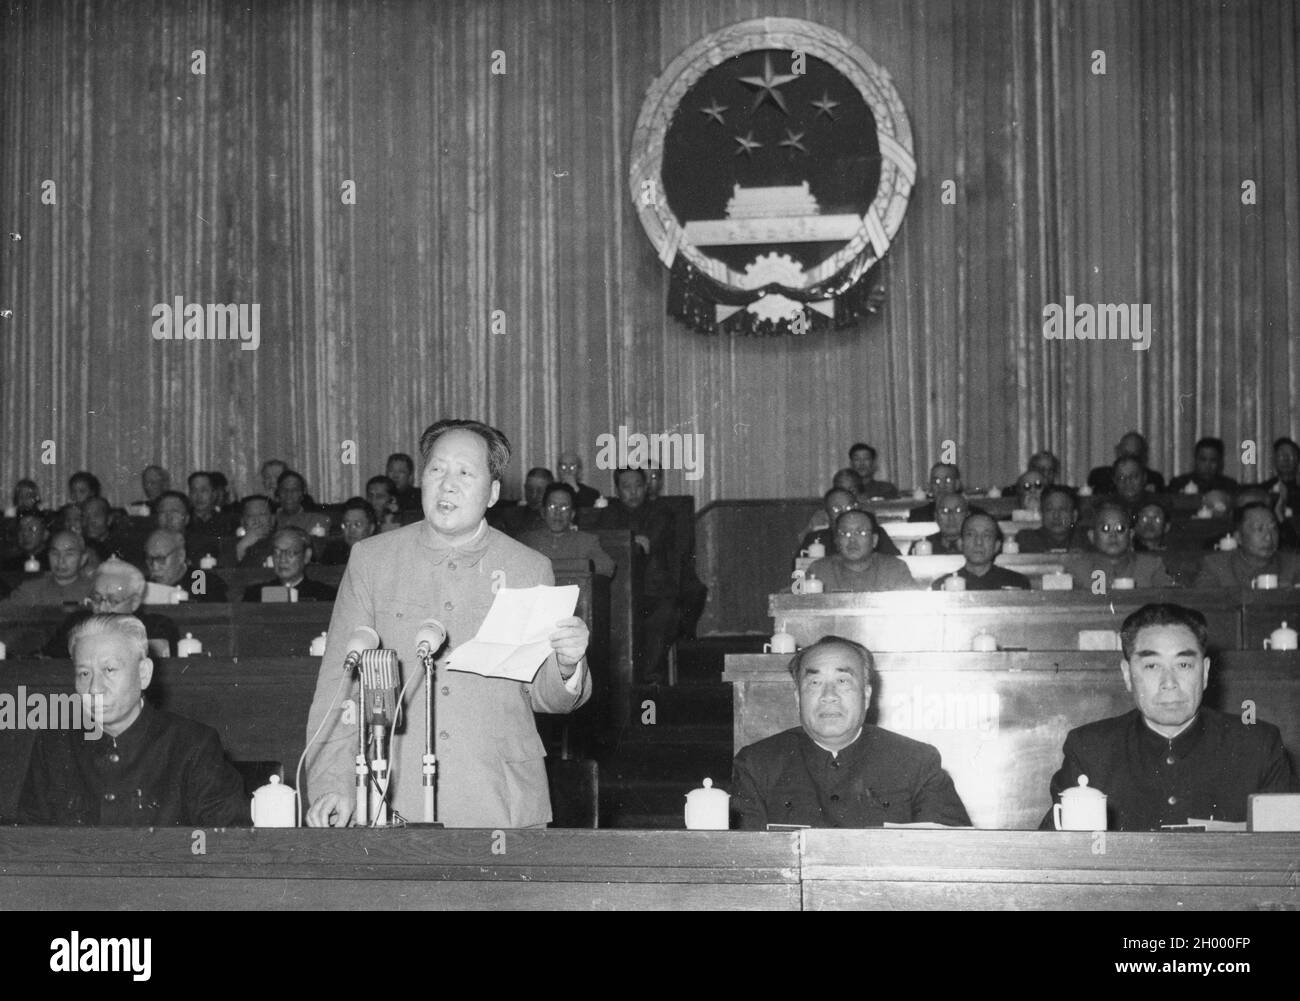 Mao Tse-Tung, président du deuxième Congrès national populaire de la République populaire de Chine (debout), préside une session ouverte le 18 avril 1959.Pékin, Chine. Banque D'Images